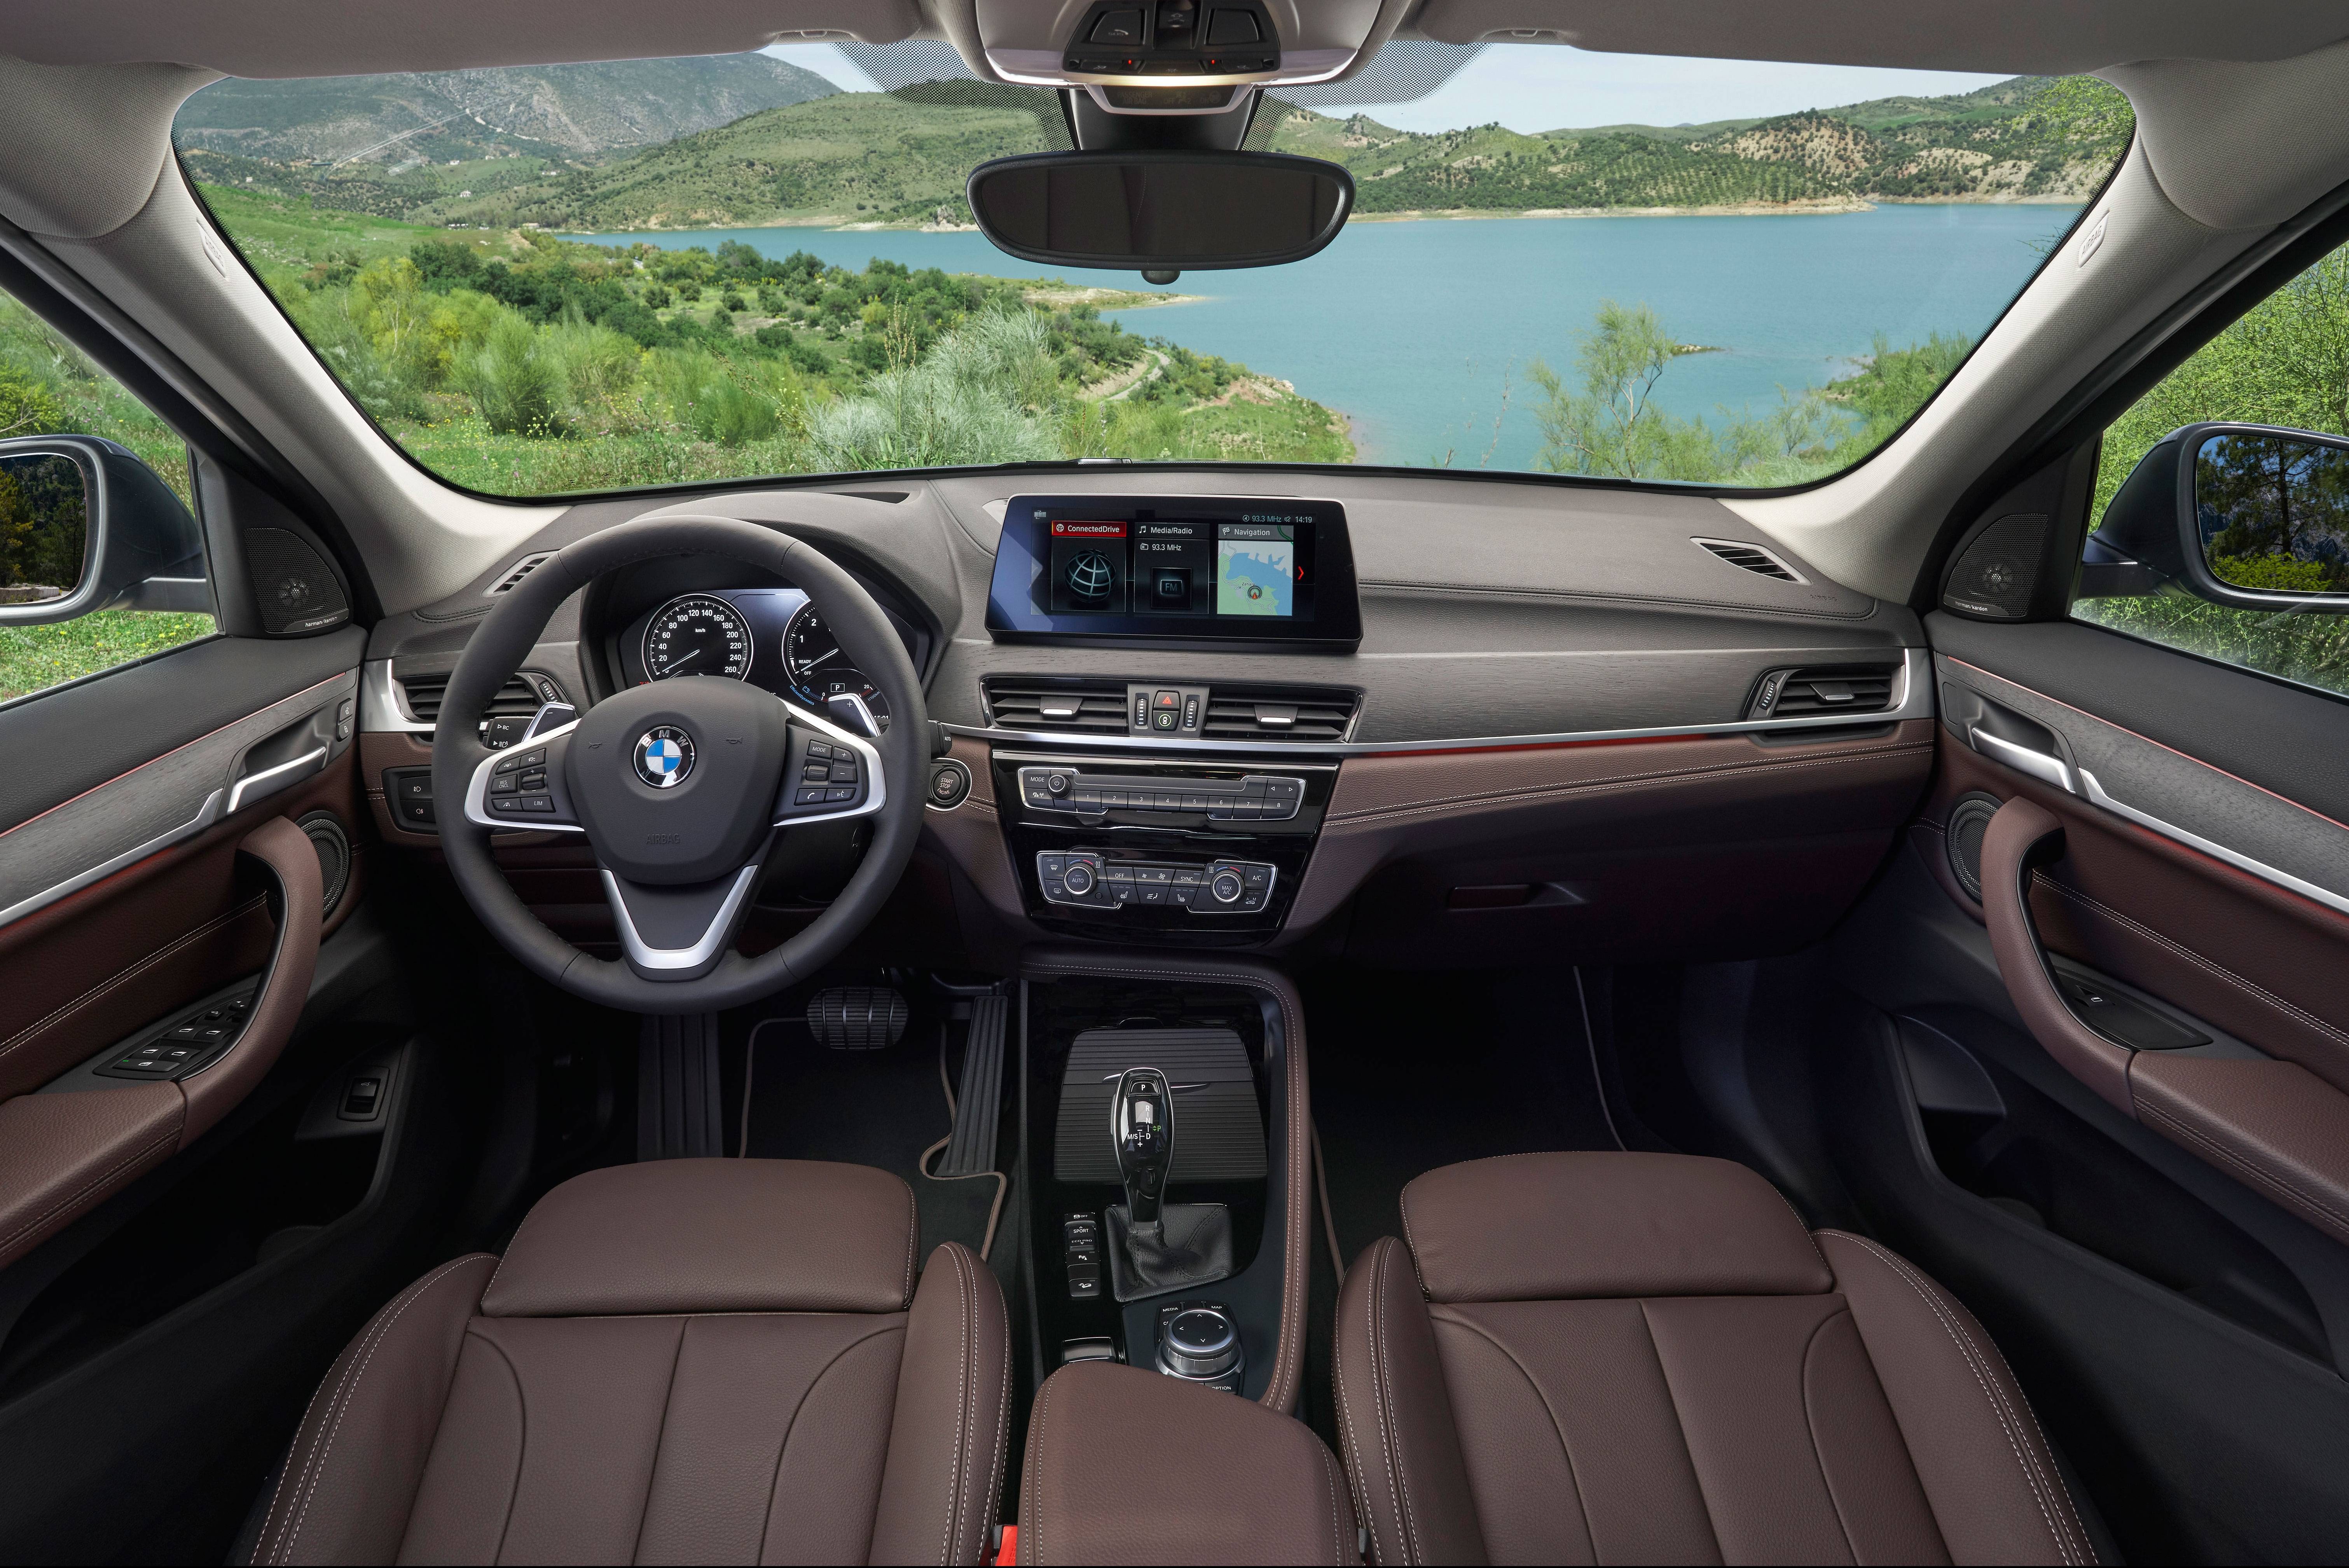 Novo BMW X1 produzido no Brasil: primeiras impressões - AUTOO